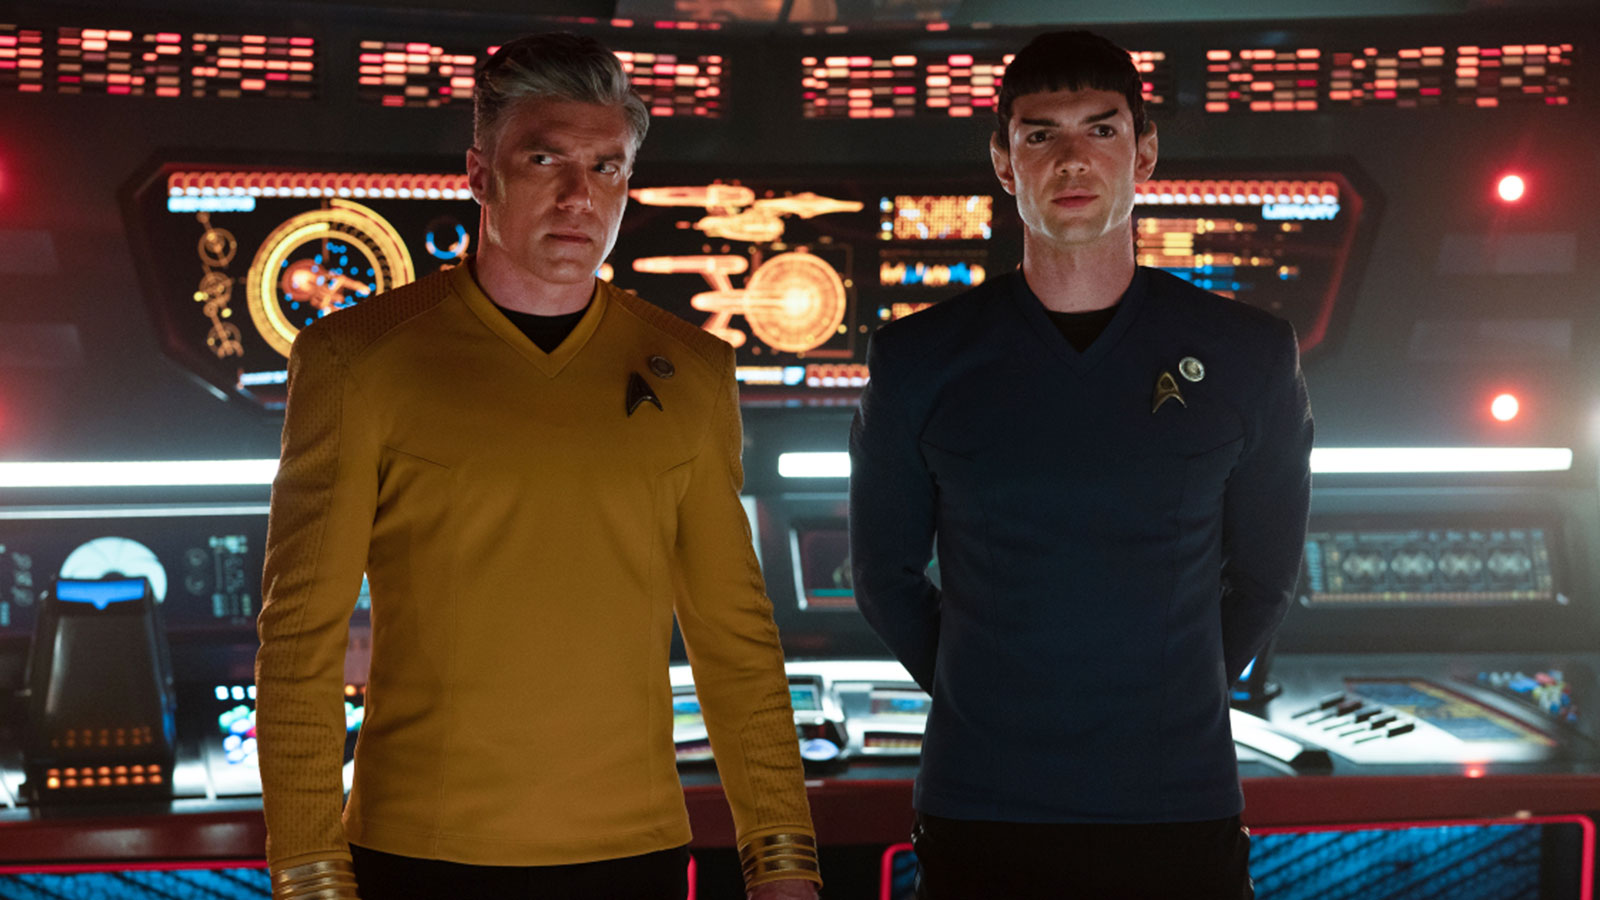 Star Trek: Strange New Worlds Episode 4 “Memento Mori” trailer + new photos